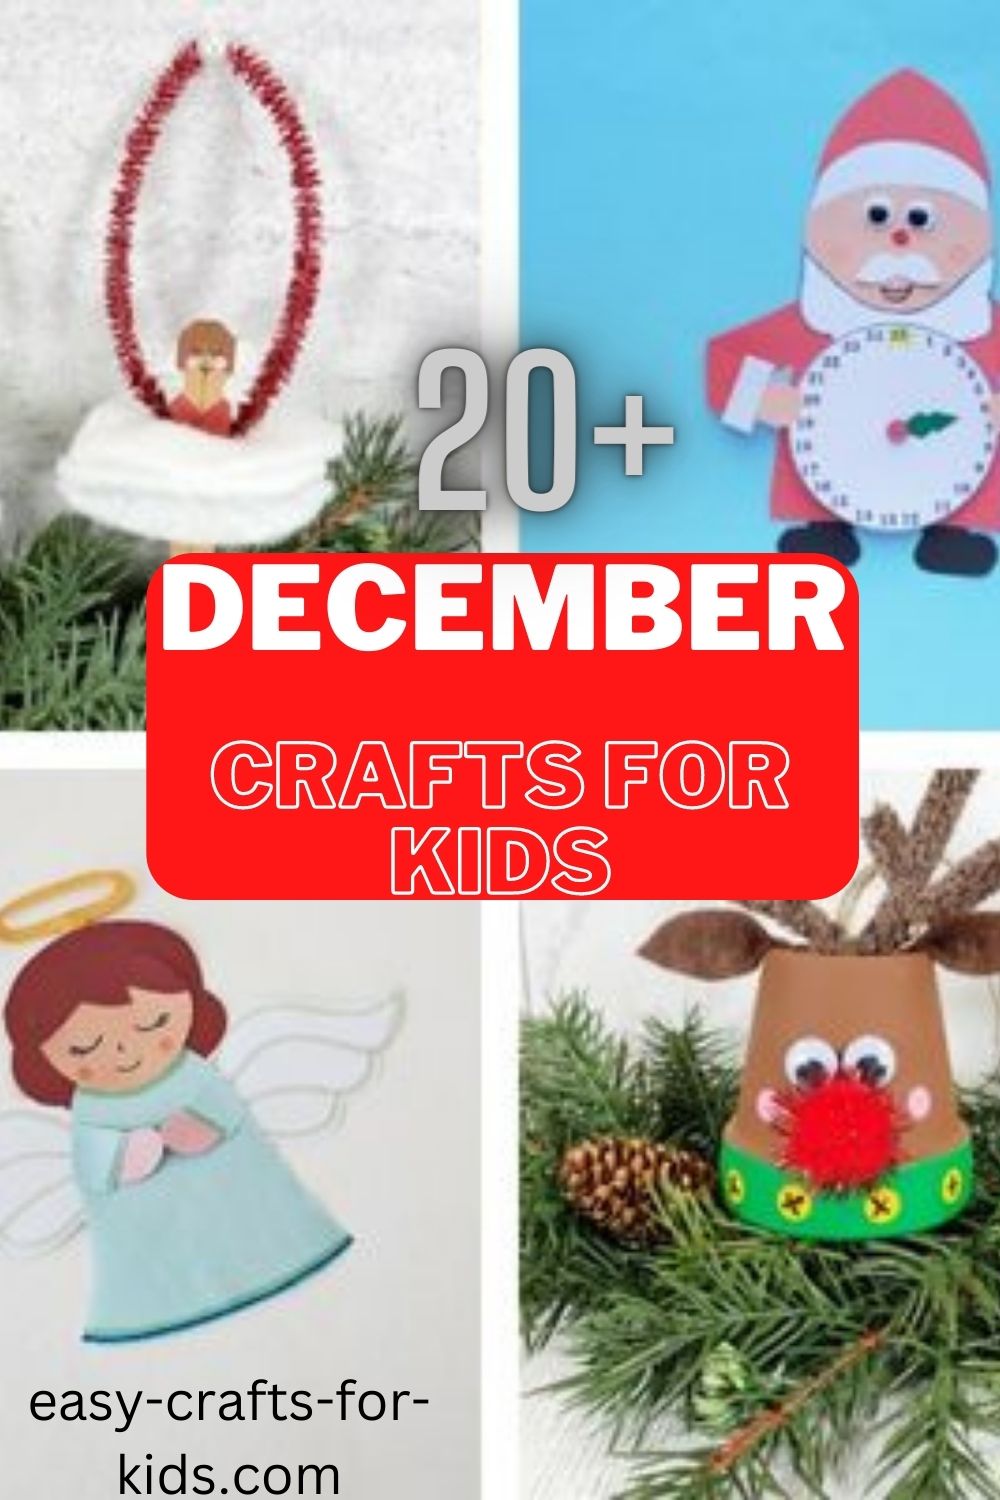 December crafts for kids